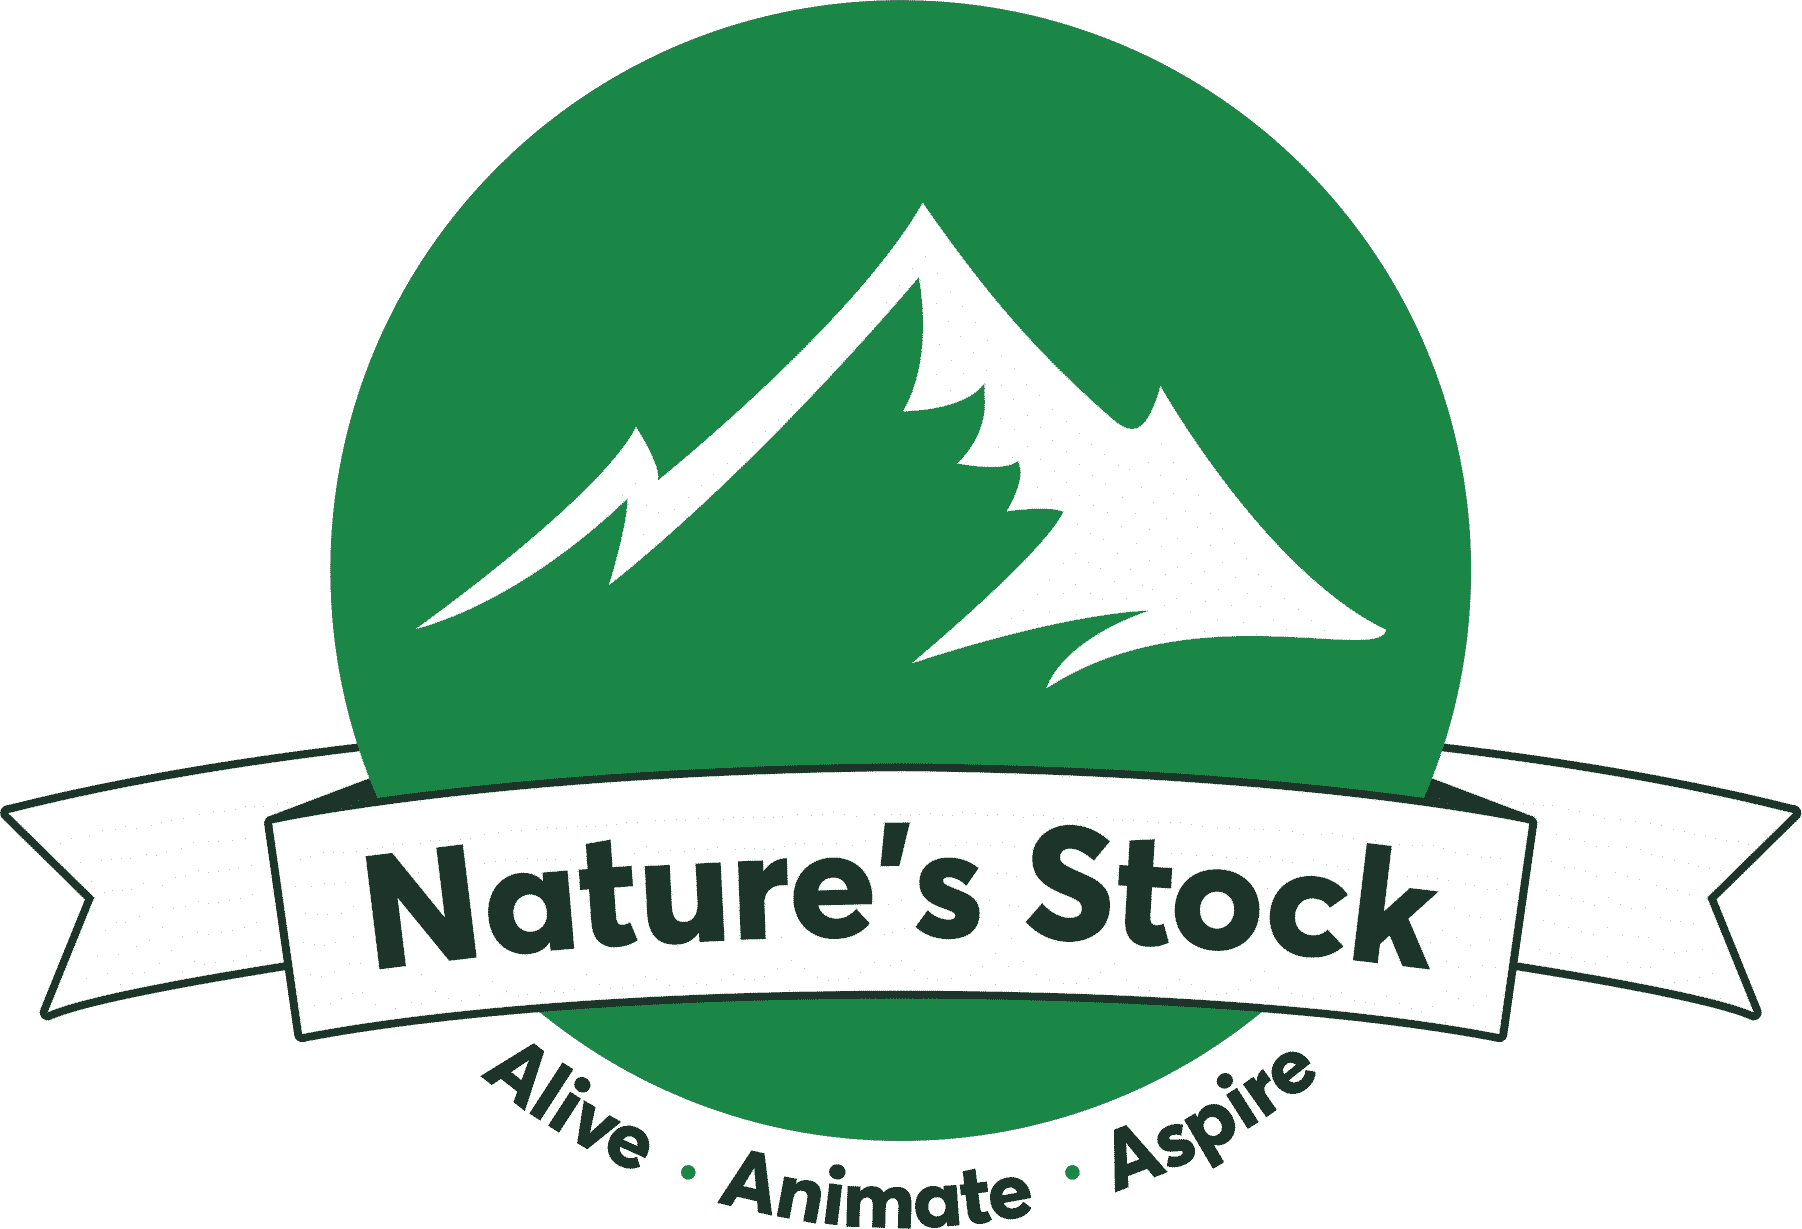 naturesstock logo